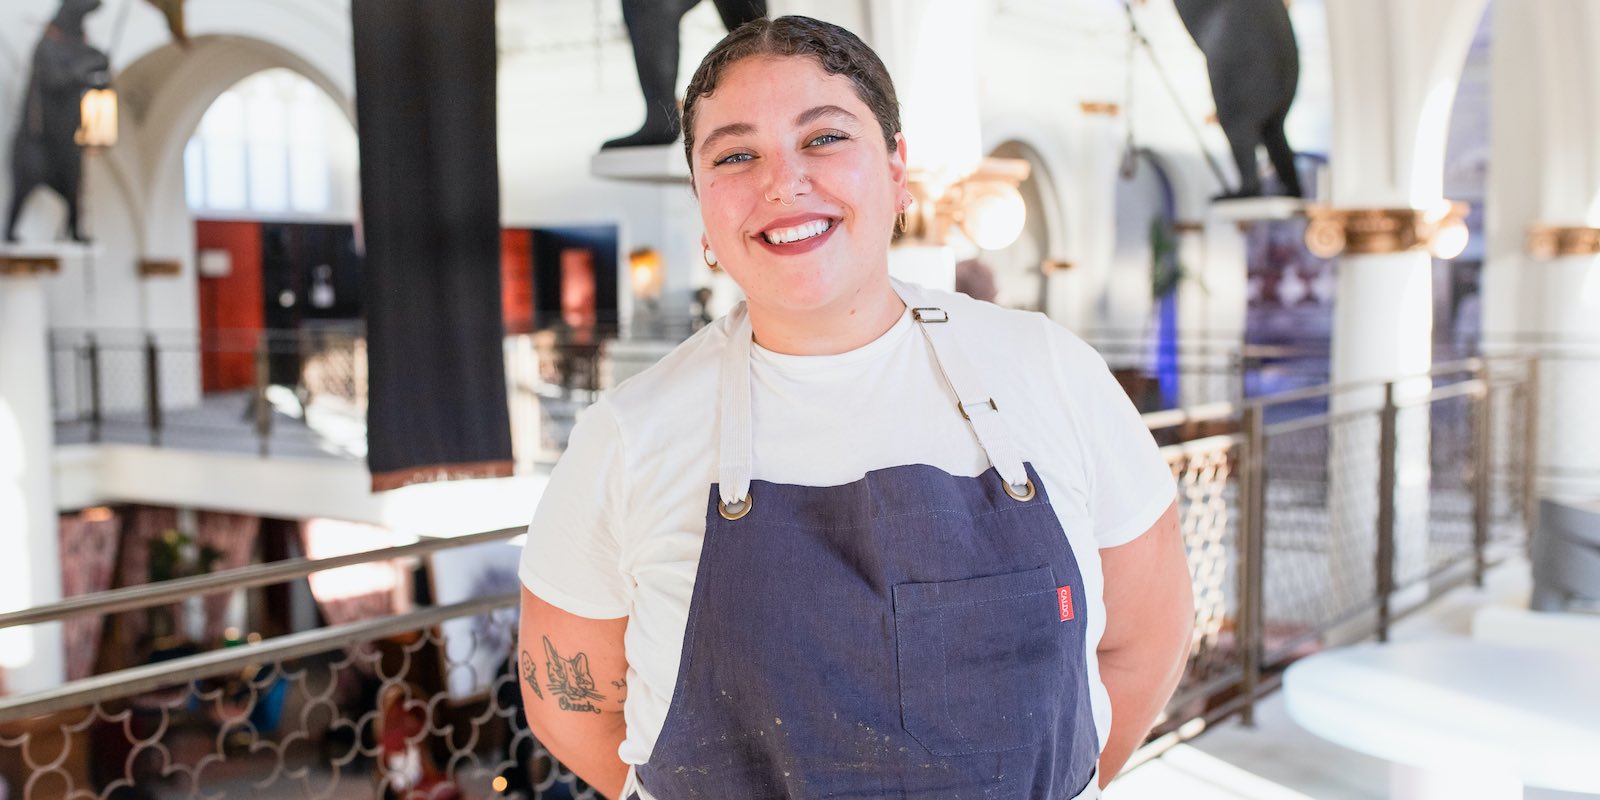 L.A. Chefs with Sandy: Meet Camila Creates